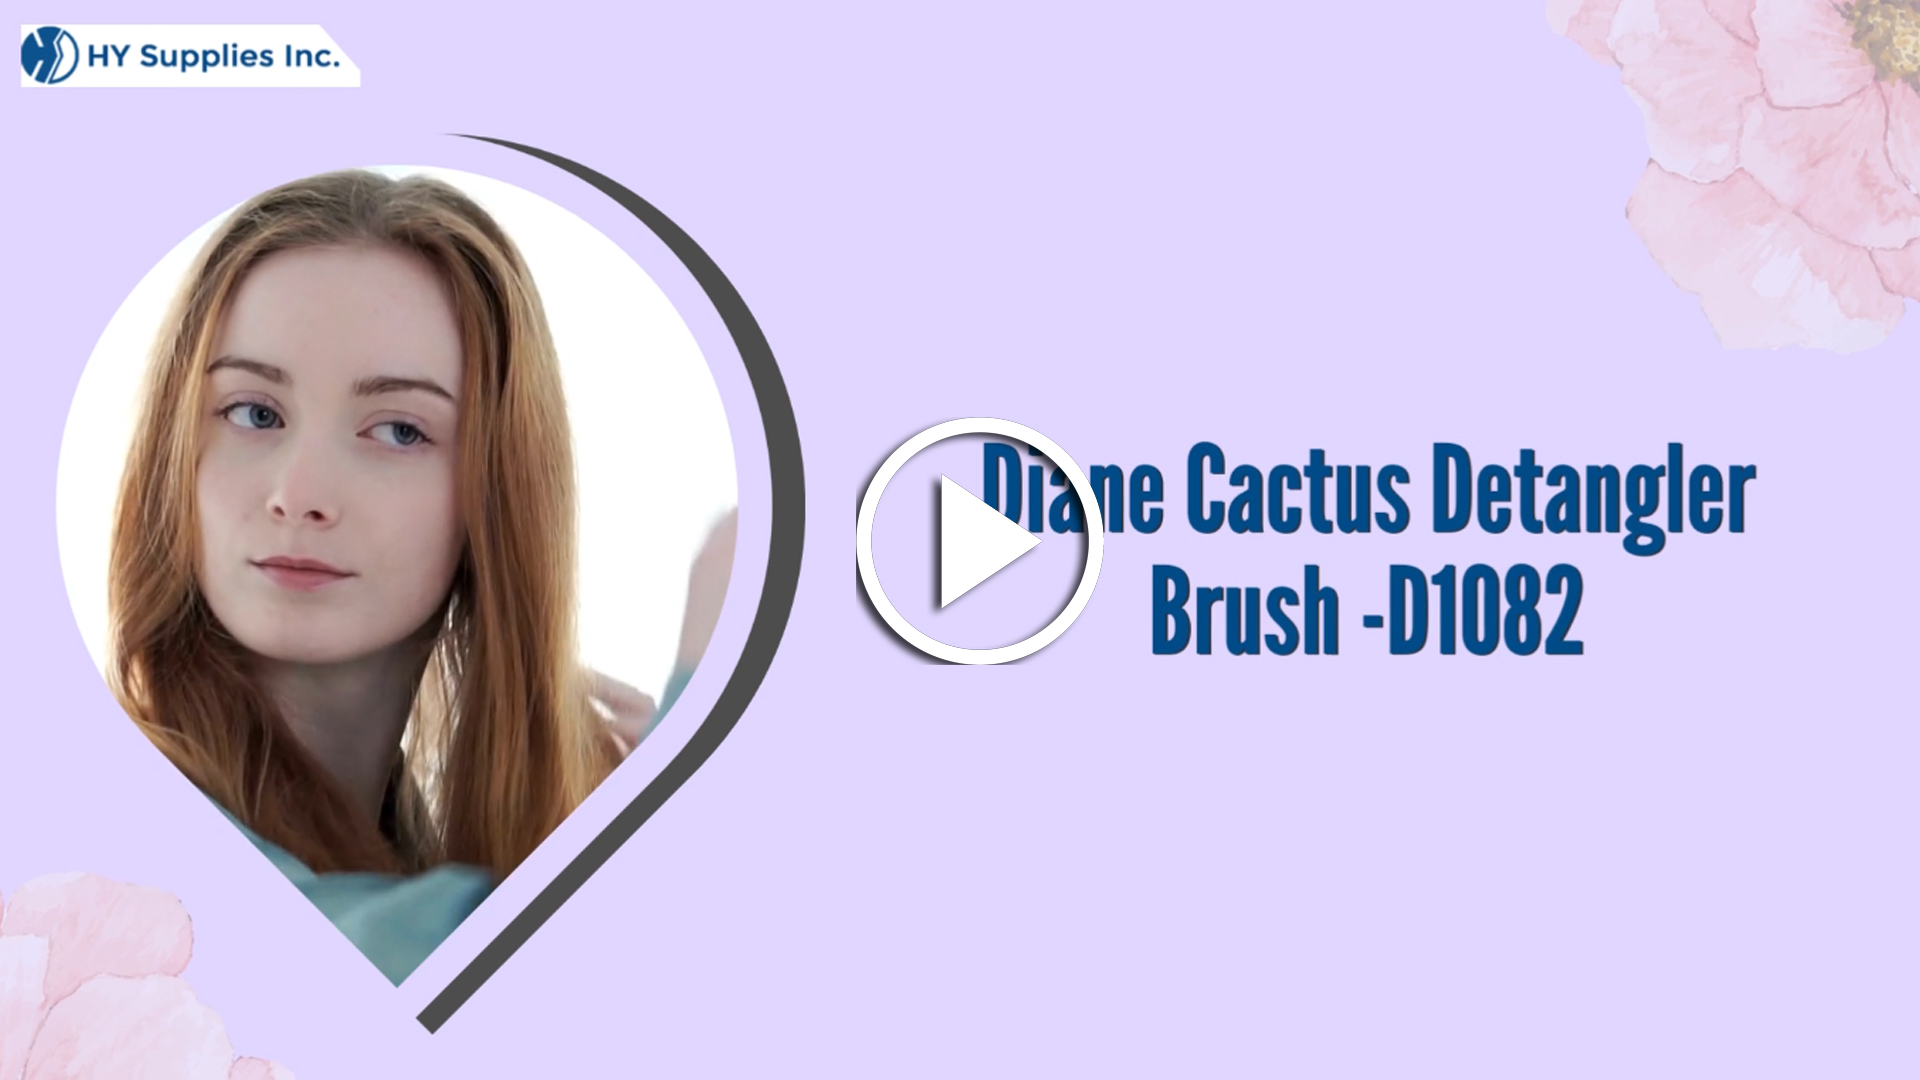 Diane Cactus Detangler Brush -D1082